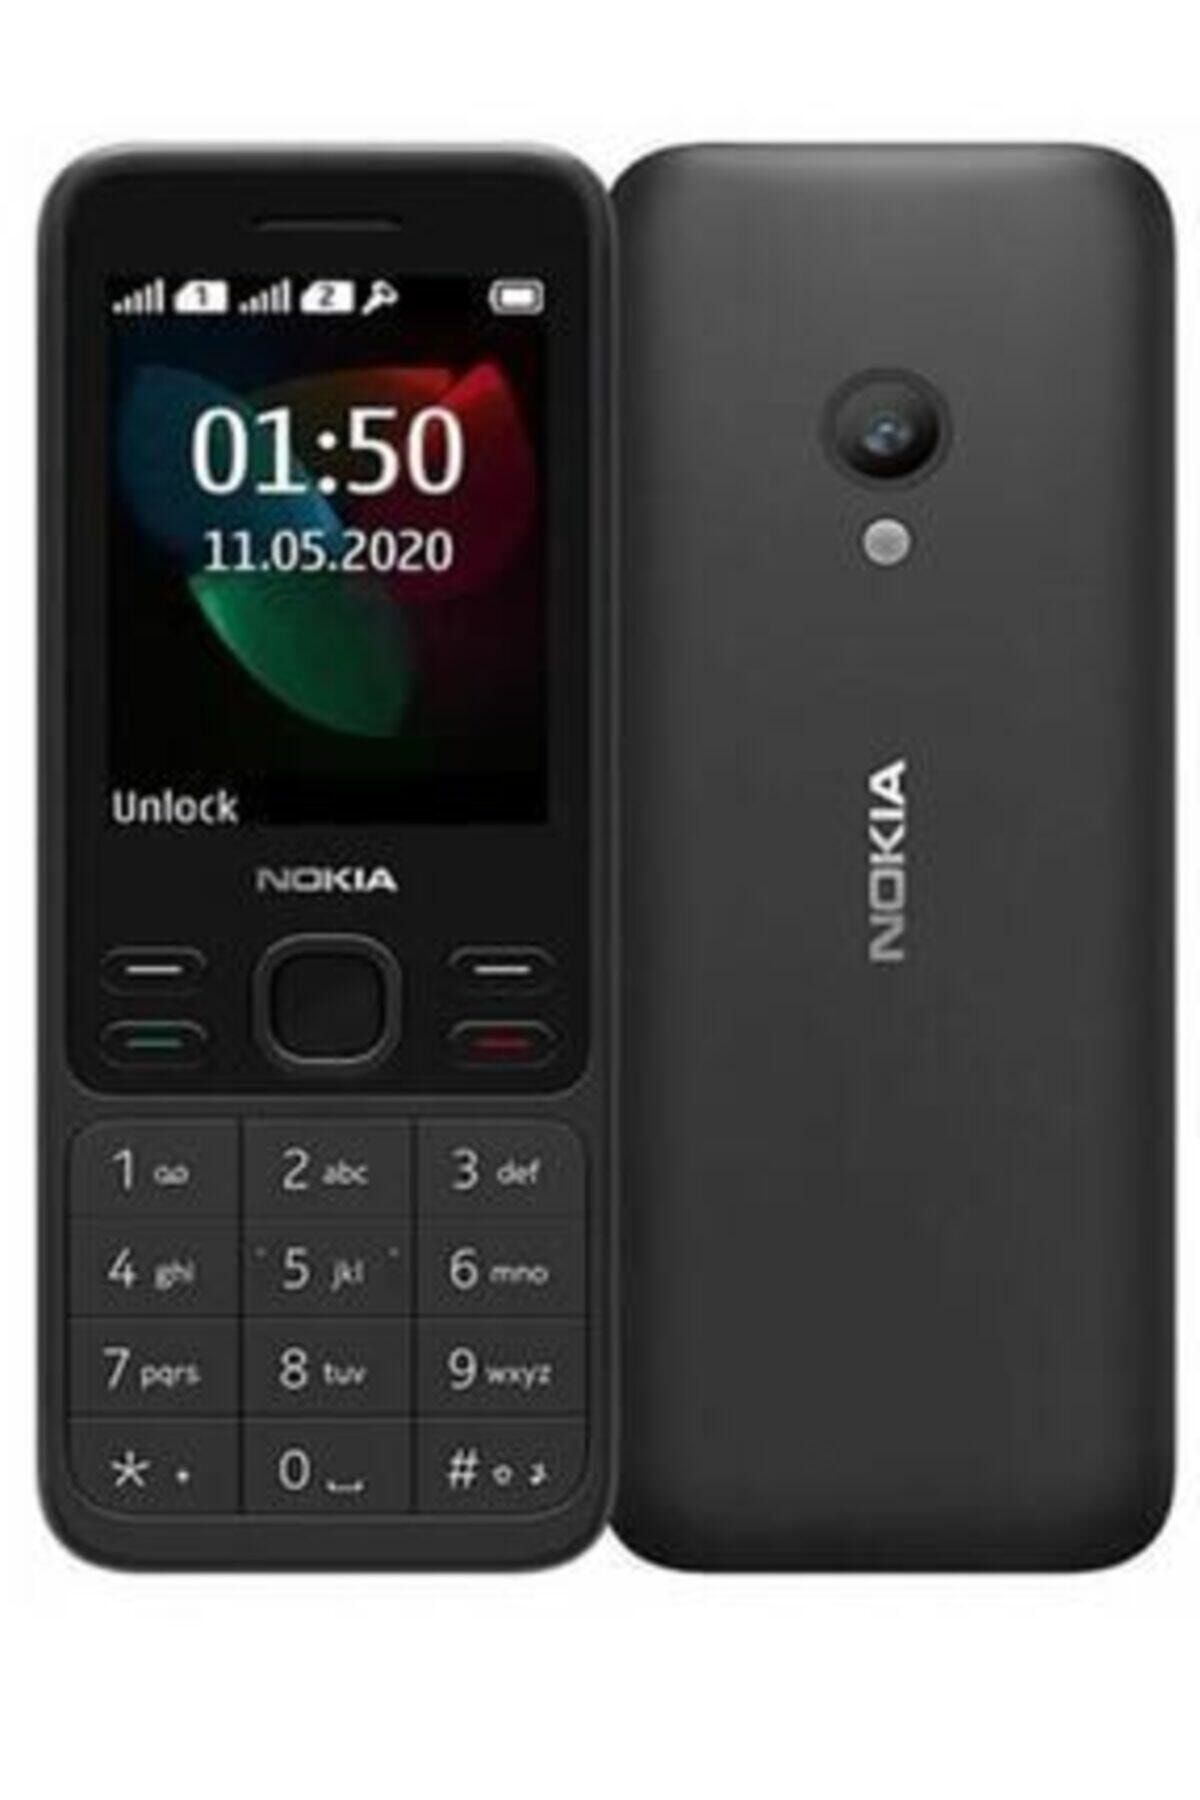 Nokia Nokia C3 Yeni Nesil Tuslu Cep Telefonu Fiyati Yorumlari Trendyol